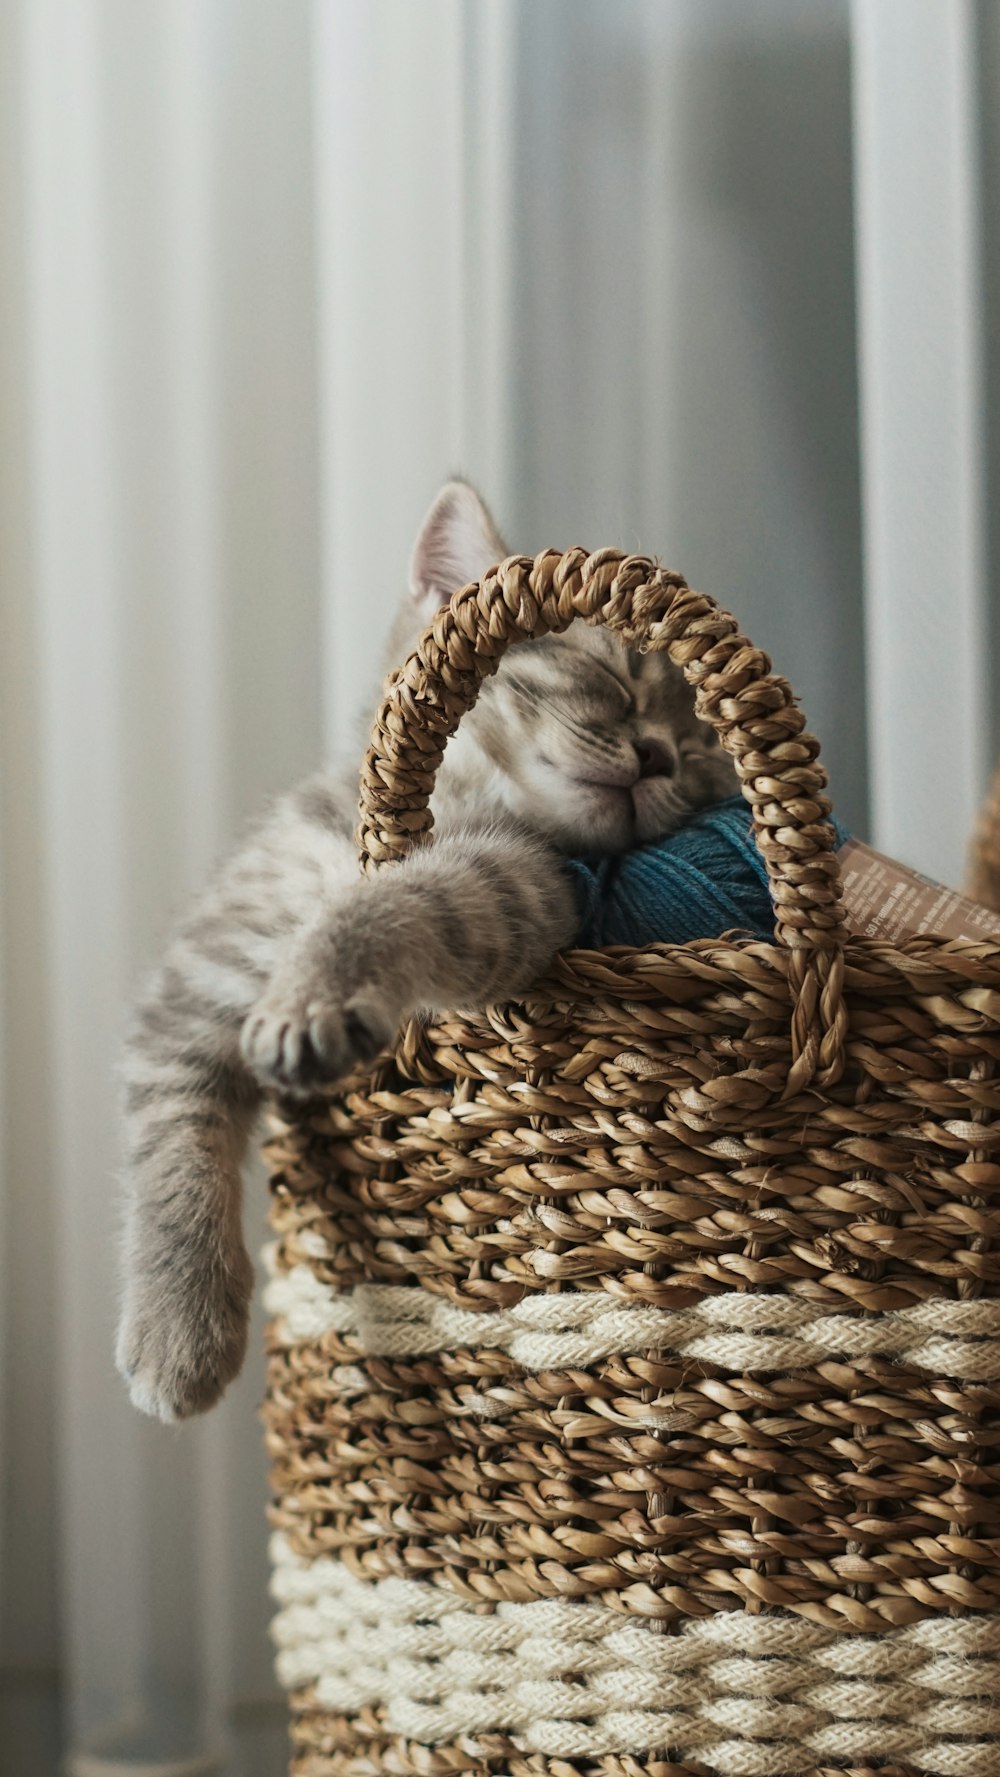 a kitten sleeping in a basket on the floor